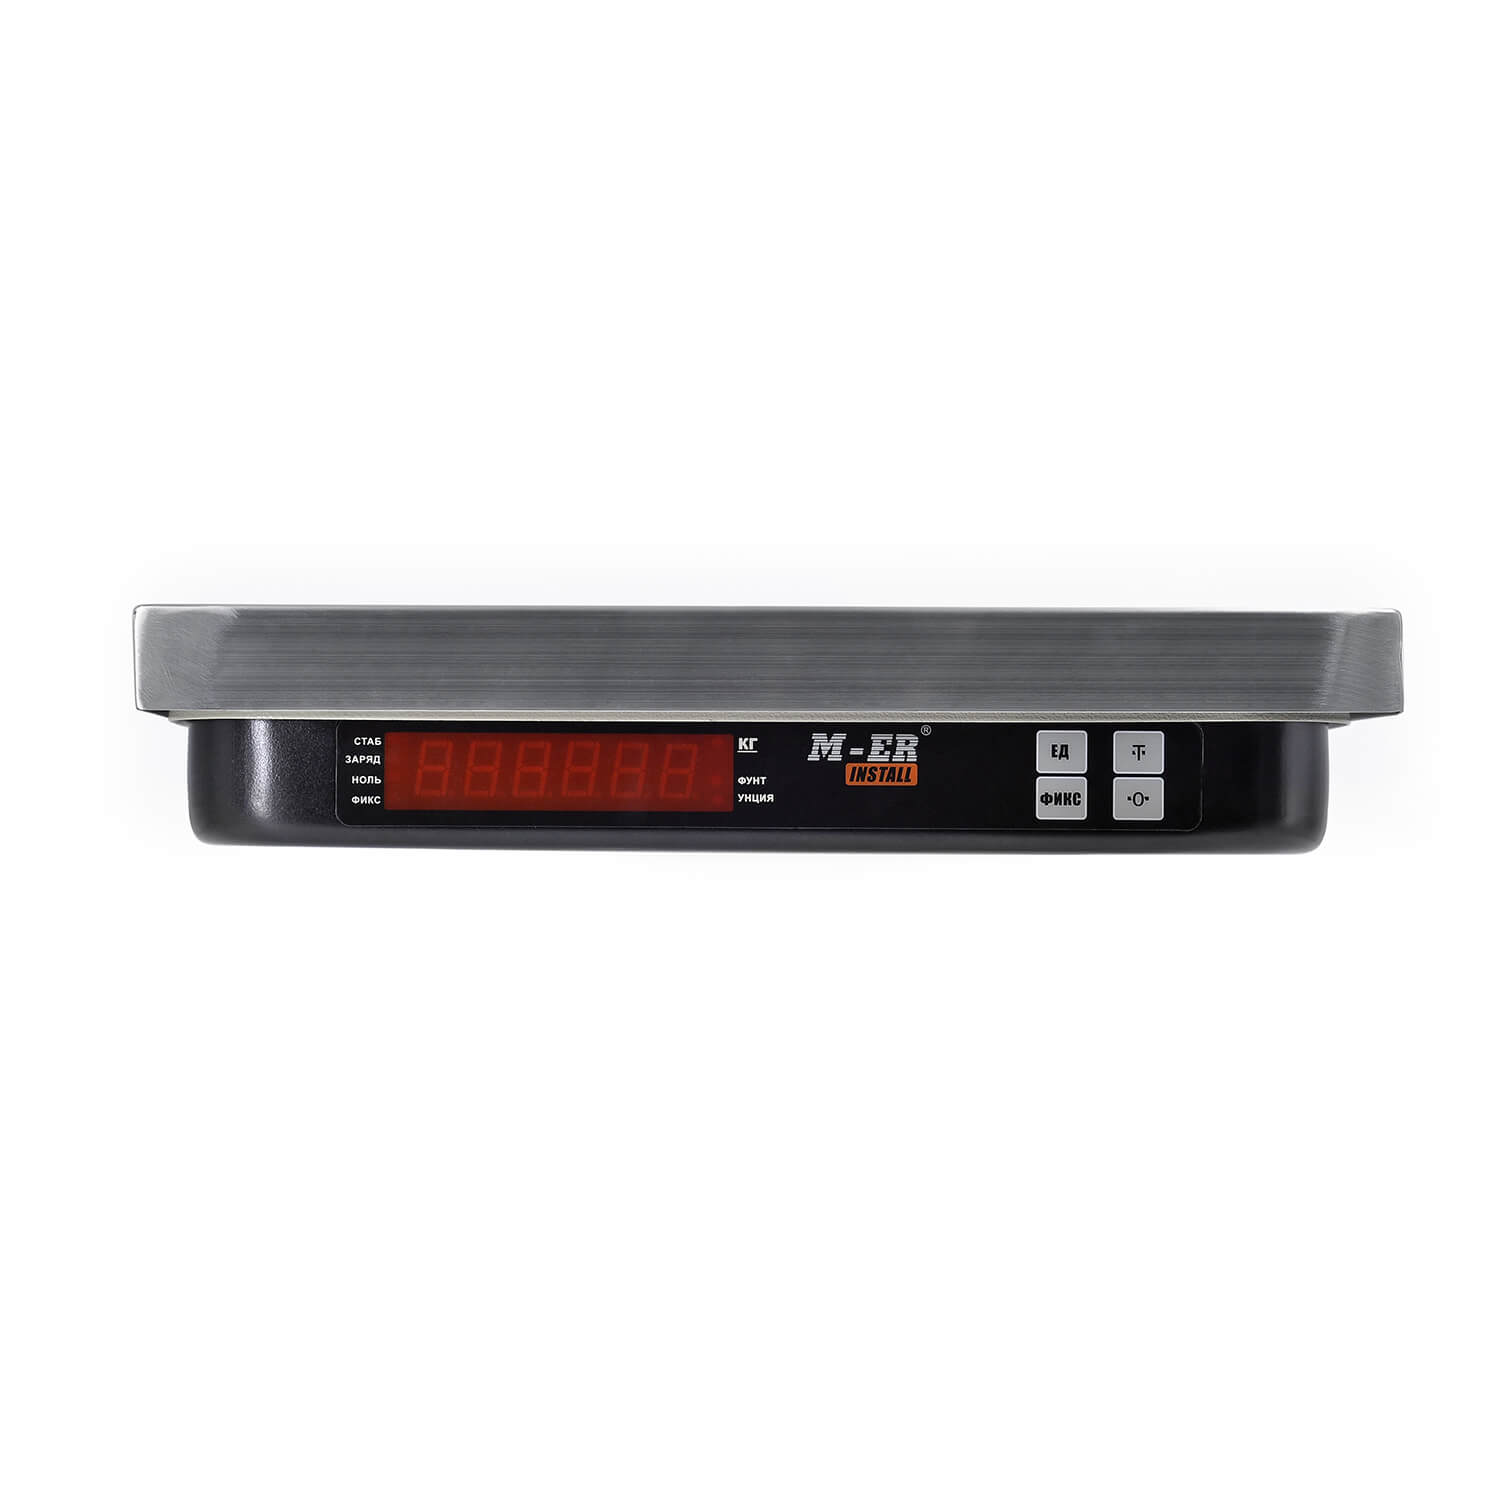 Фасовочные настольные весы M-ER 221 F-15.2 "Install" RS-232 и USB (3616)